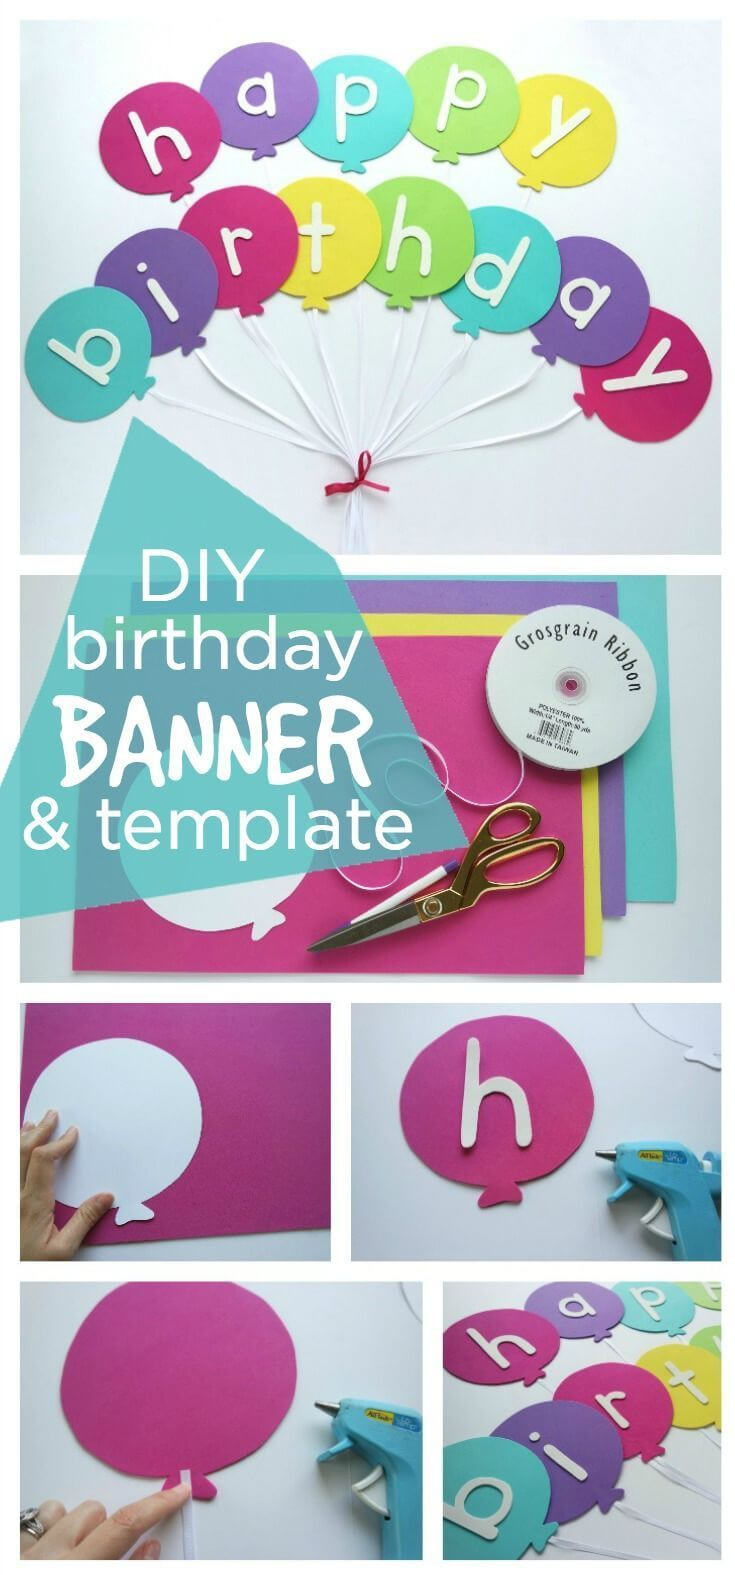 Happy Birthday Banner Diy Template | Diy Party Ideas  Group With Diy Party Banner Template